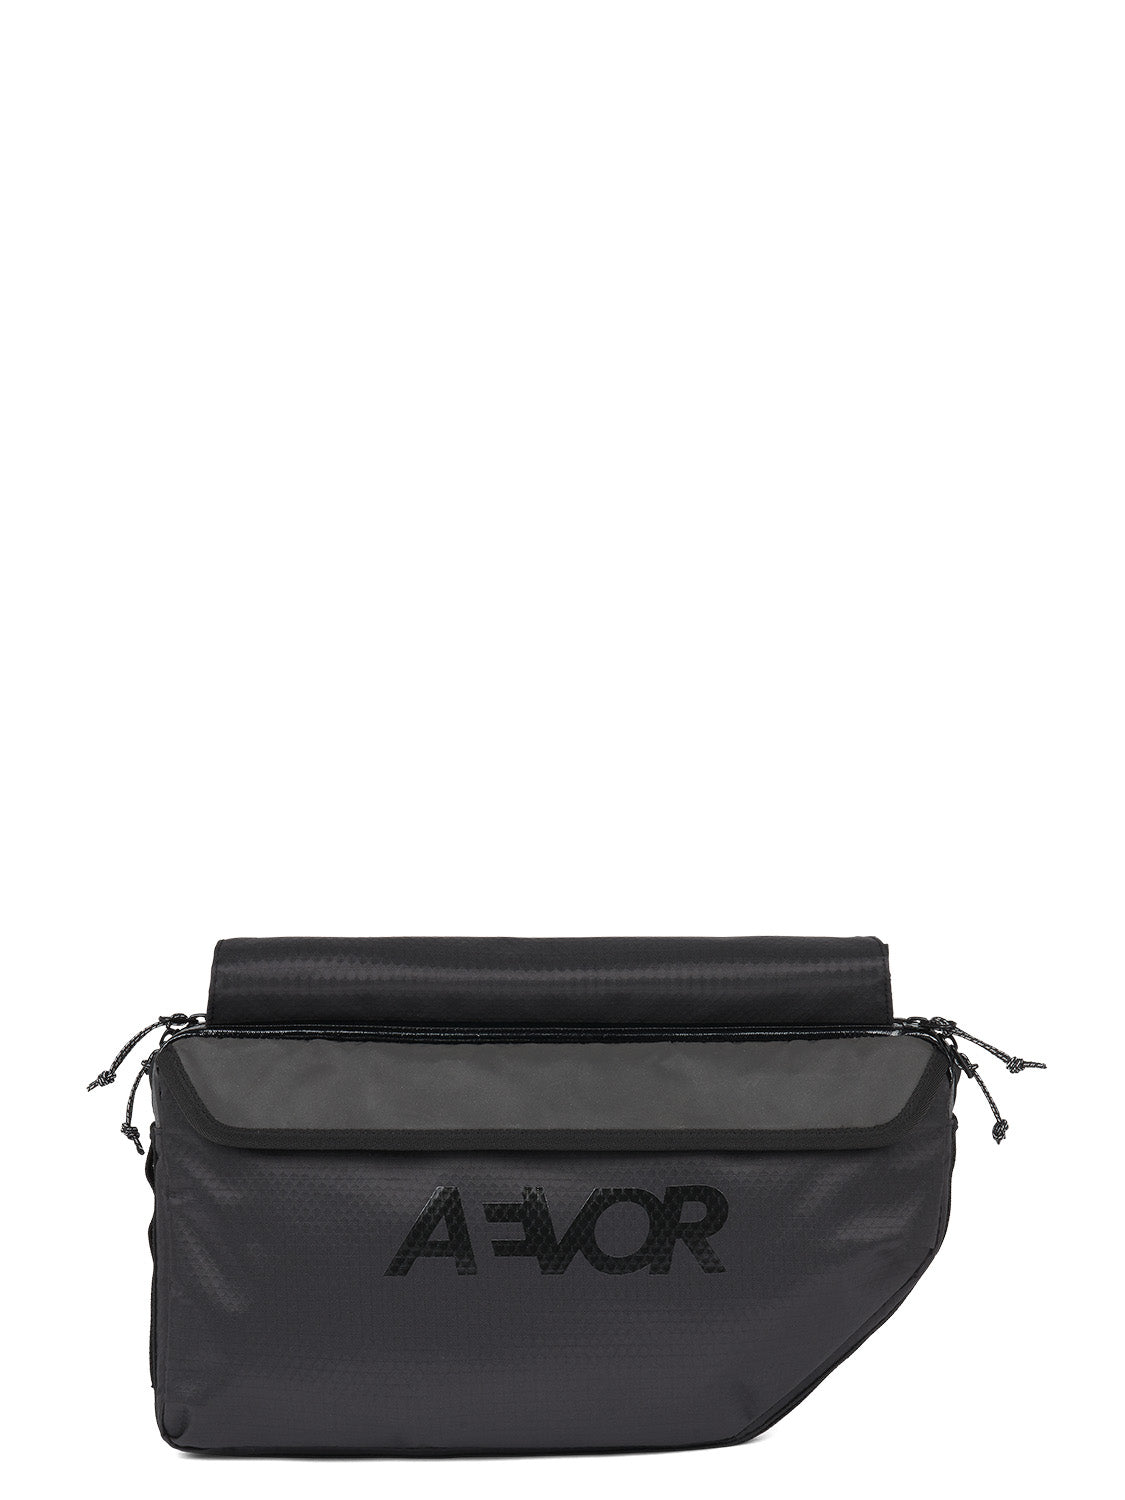 AEVOR-Frame-Bag-Large-Proof-Black-front